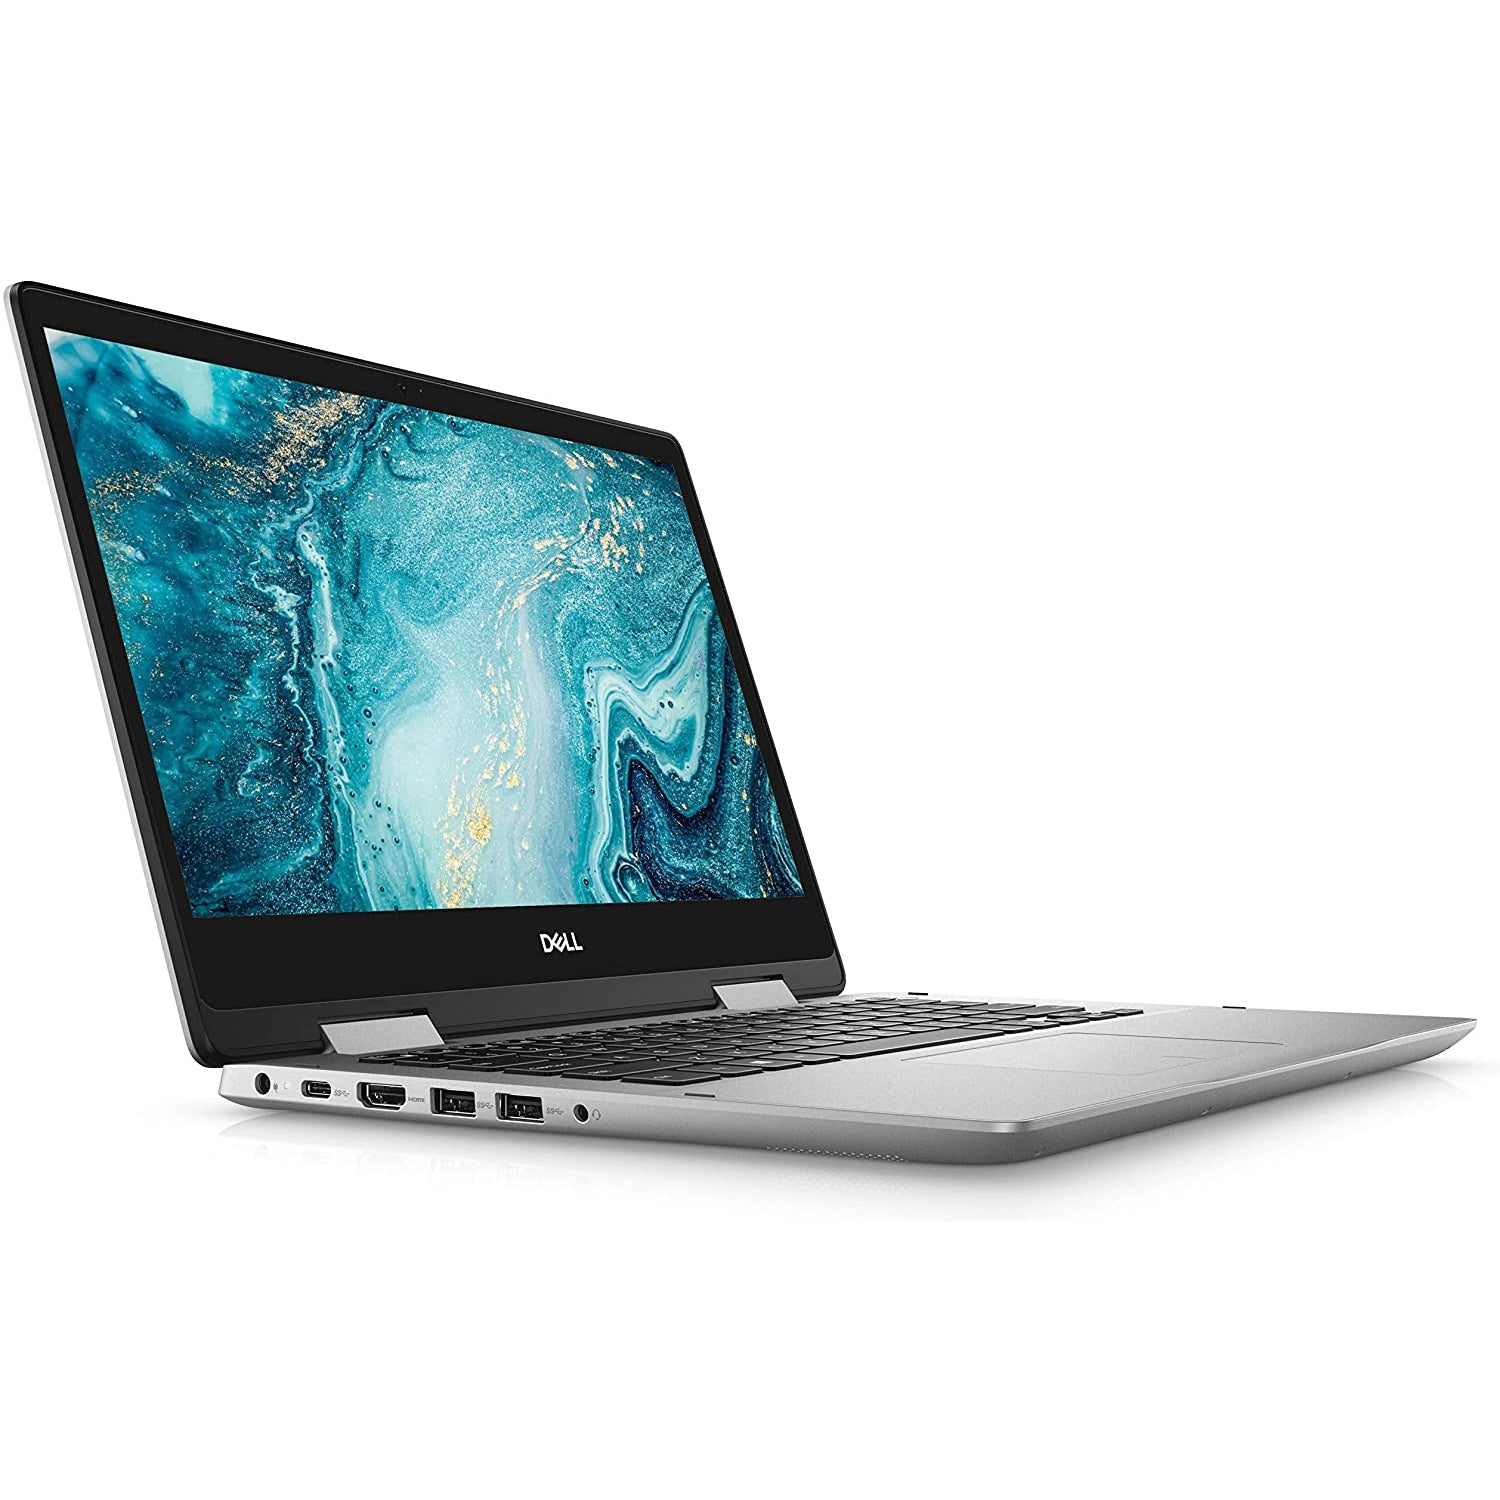 Dell Inspiron 14 5000 Laptop, Intel Core i5, 8GB RAM, 512GB SSD, 14”, Silver